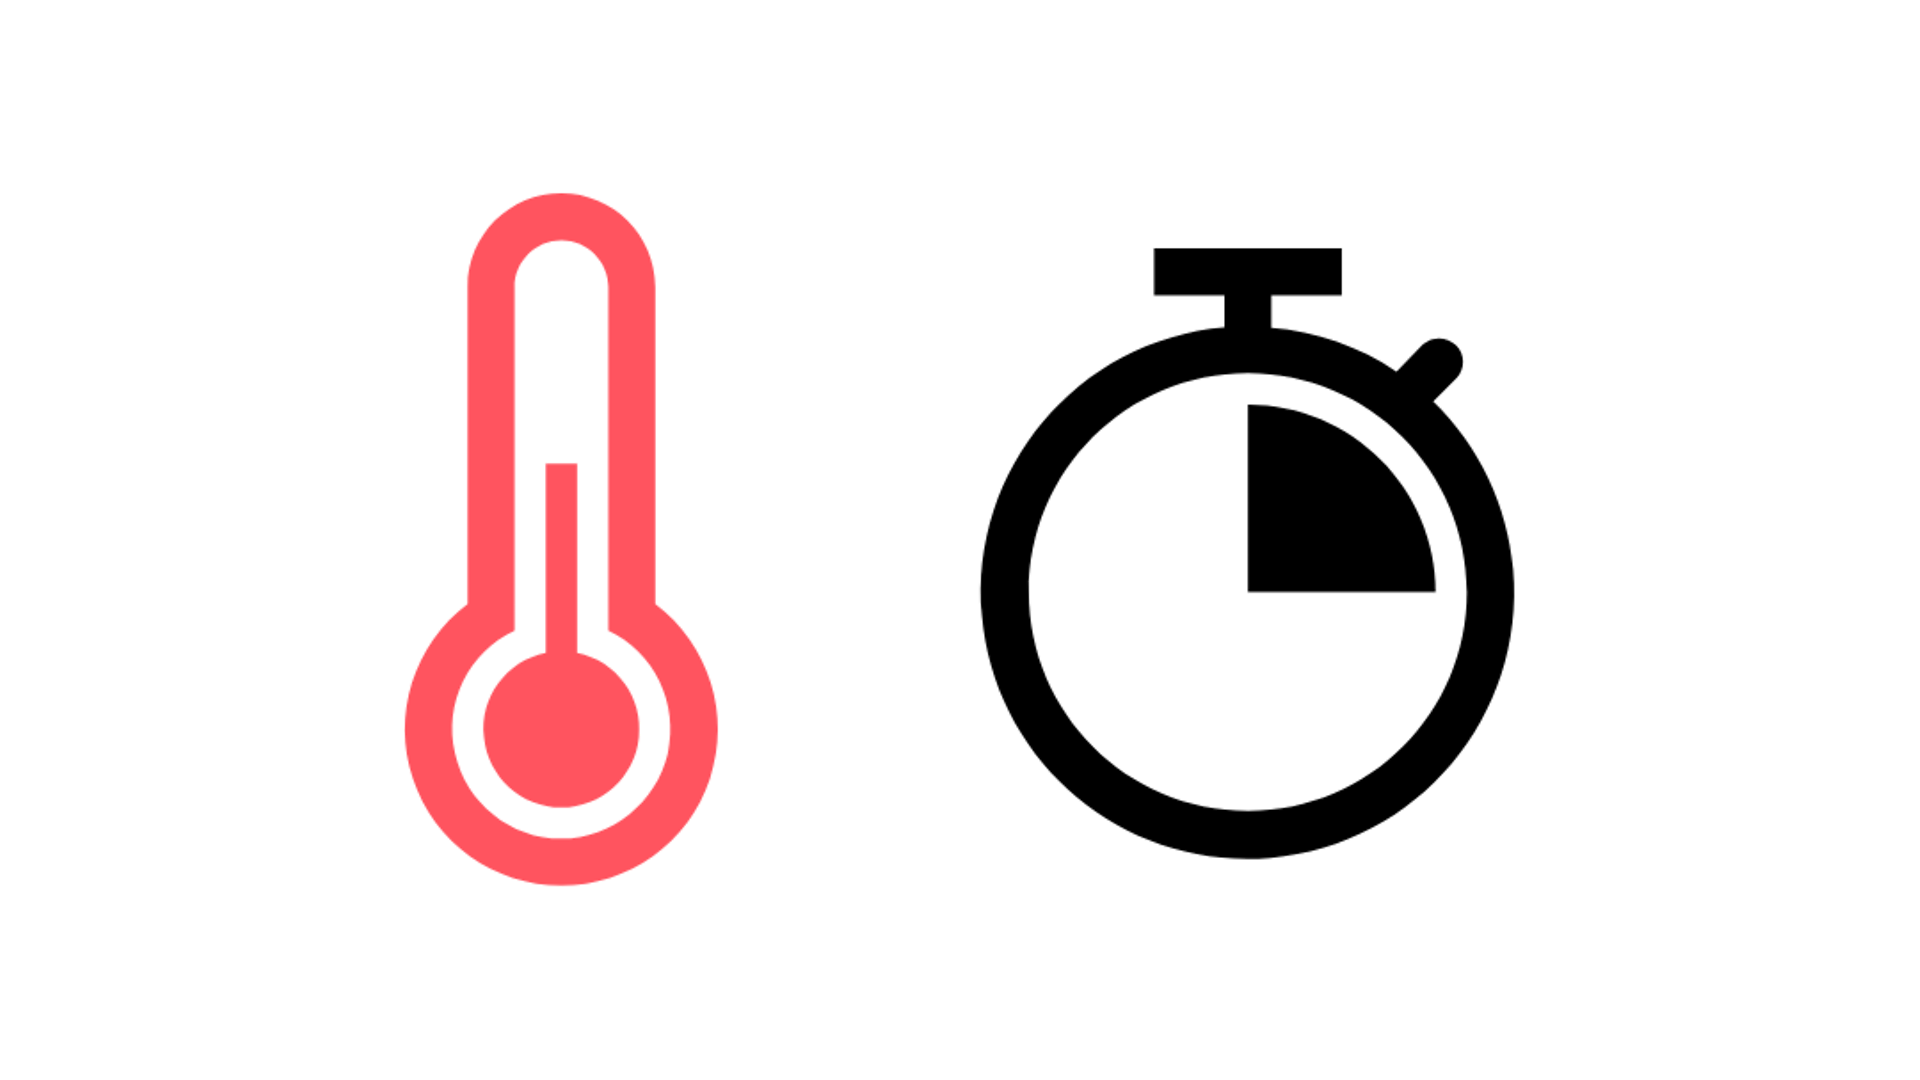 símbolo vermelho para símbolo de termômetro e relógio, quarto de hora